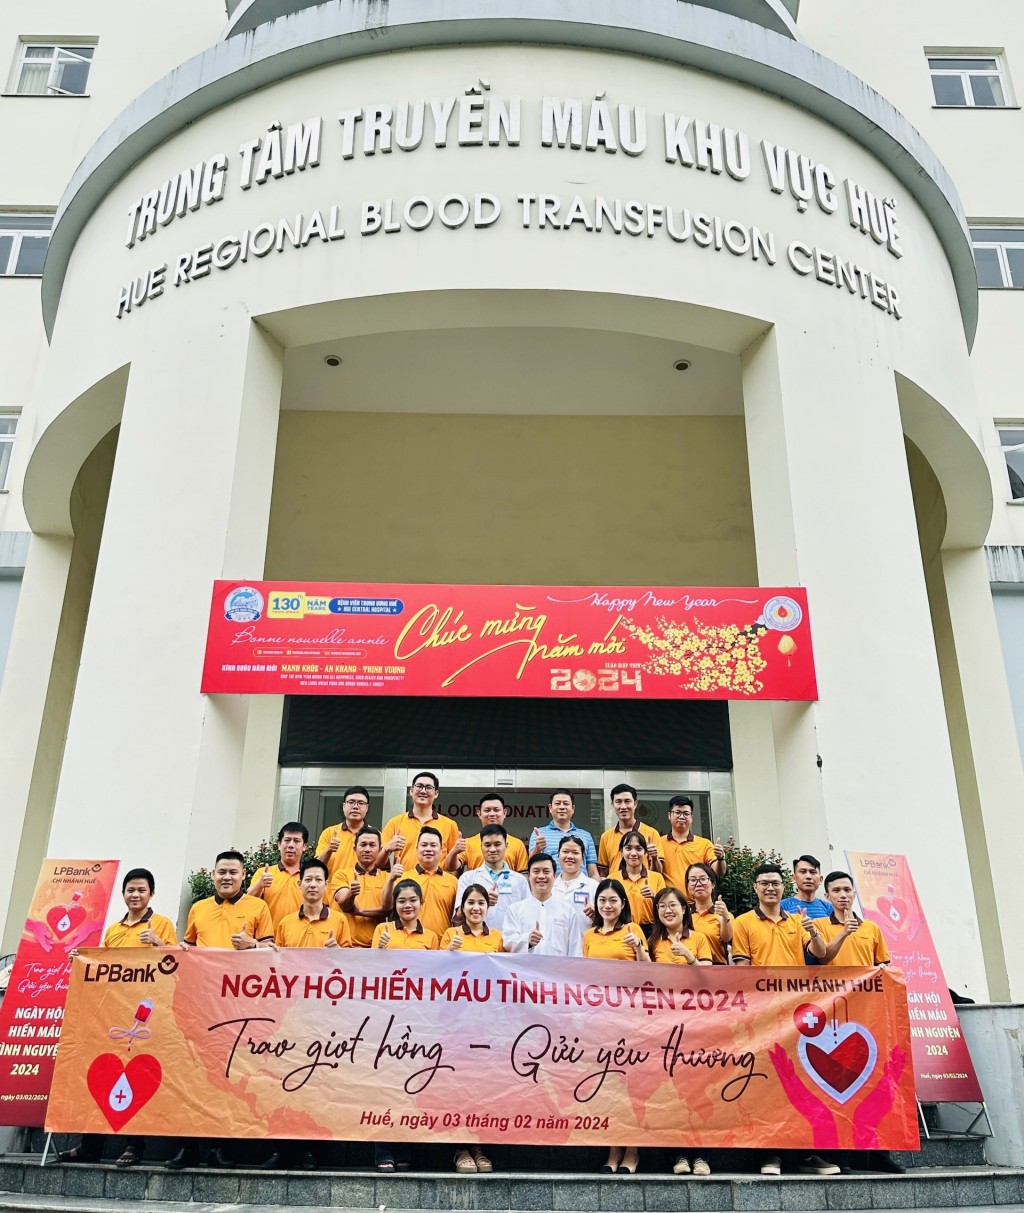 LPBank chi nhánh Huế cũng sôi động trong Ngày hội hiến máu tình nguyện 2024.